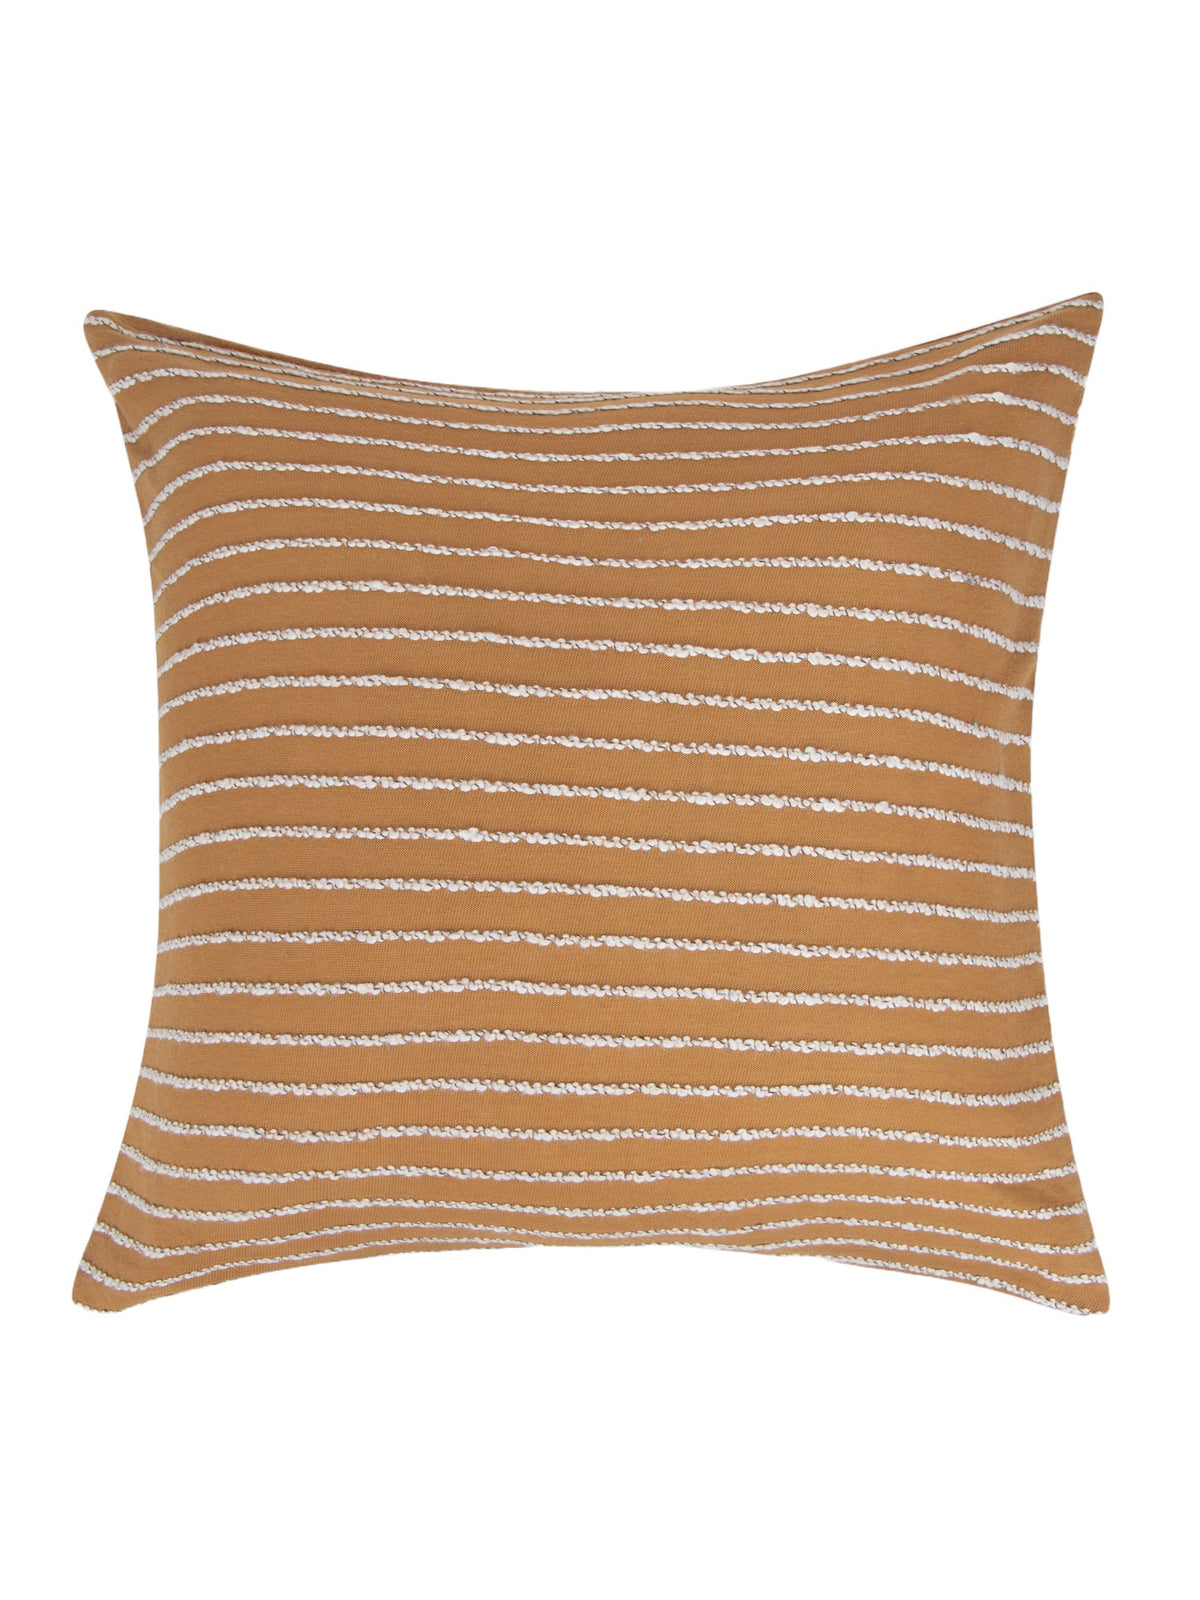 Tan cotton knit cushion cover